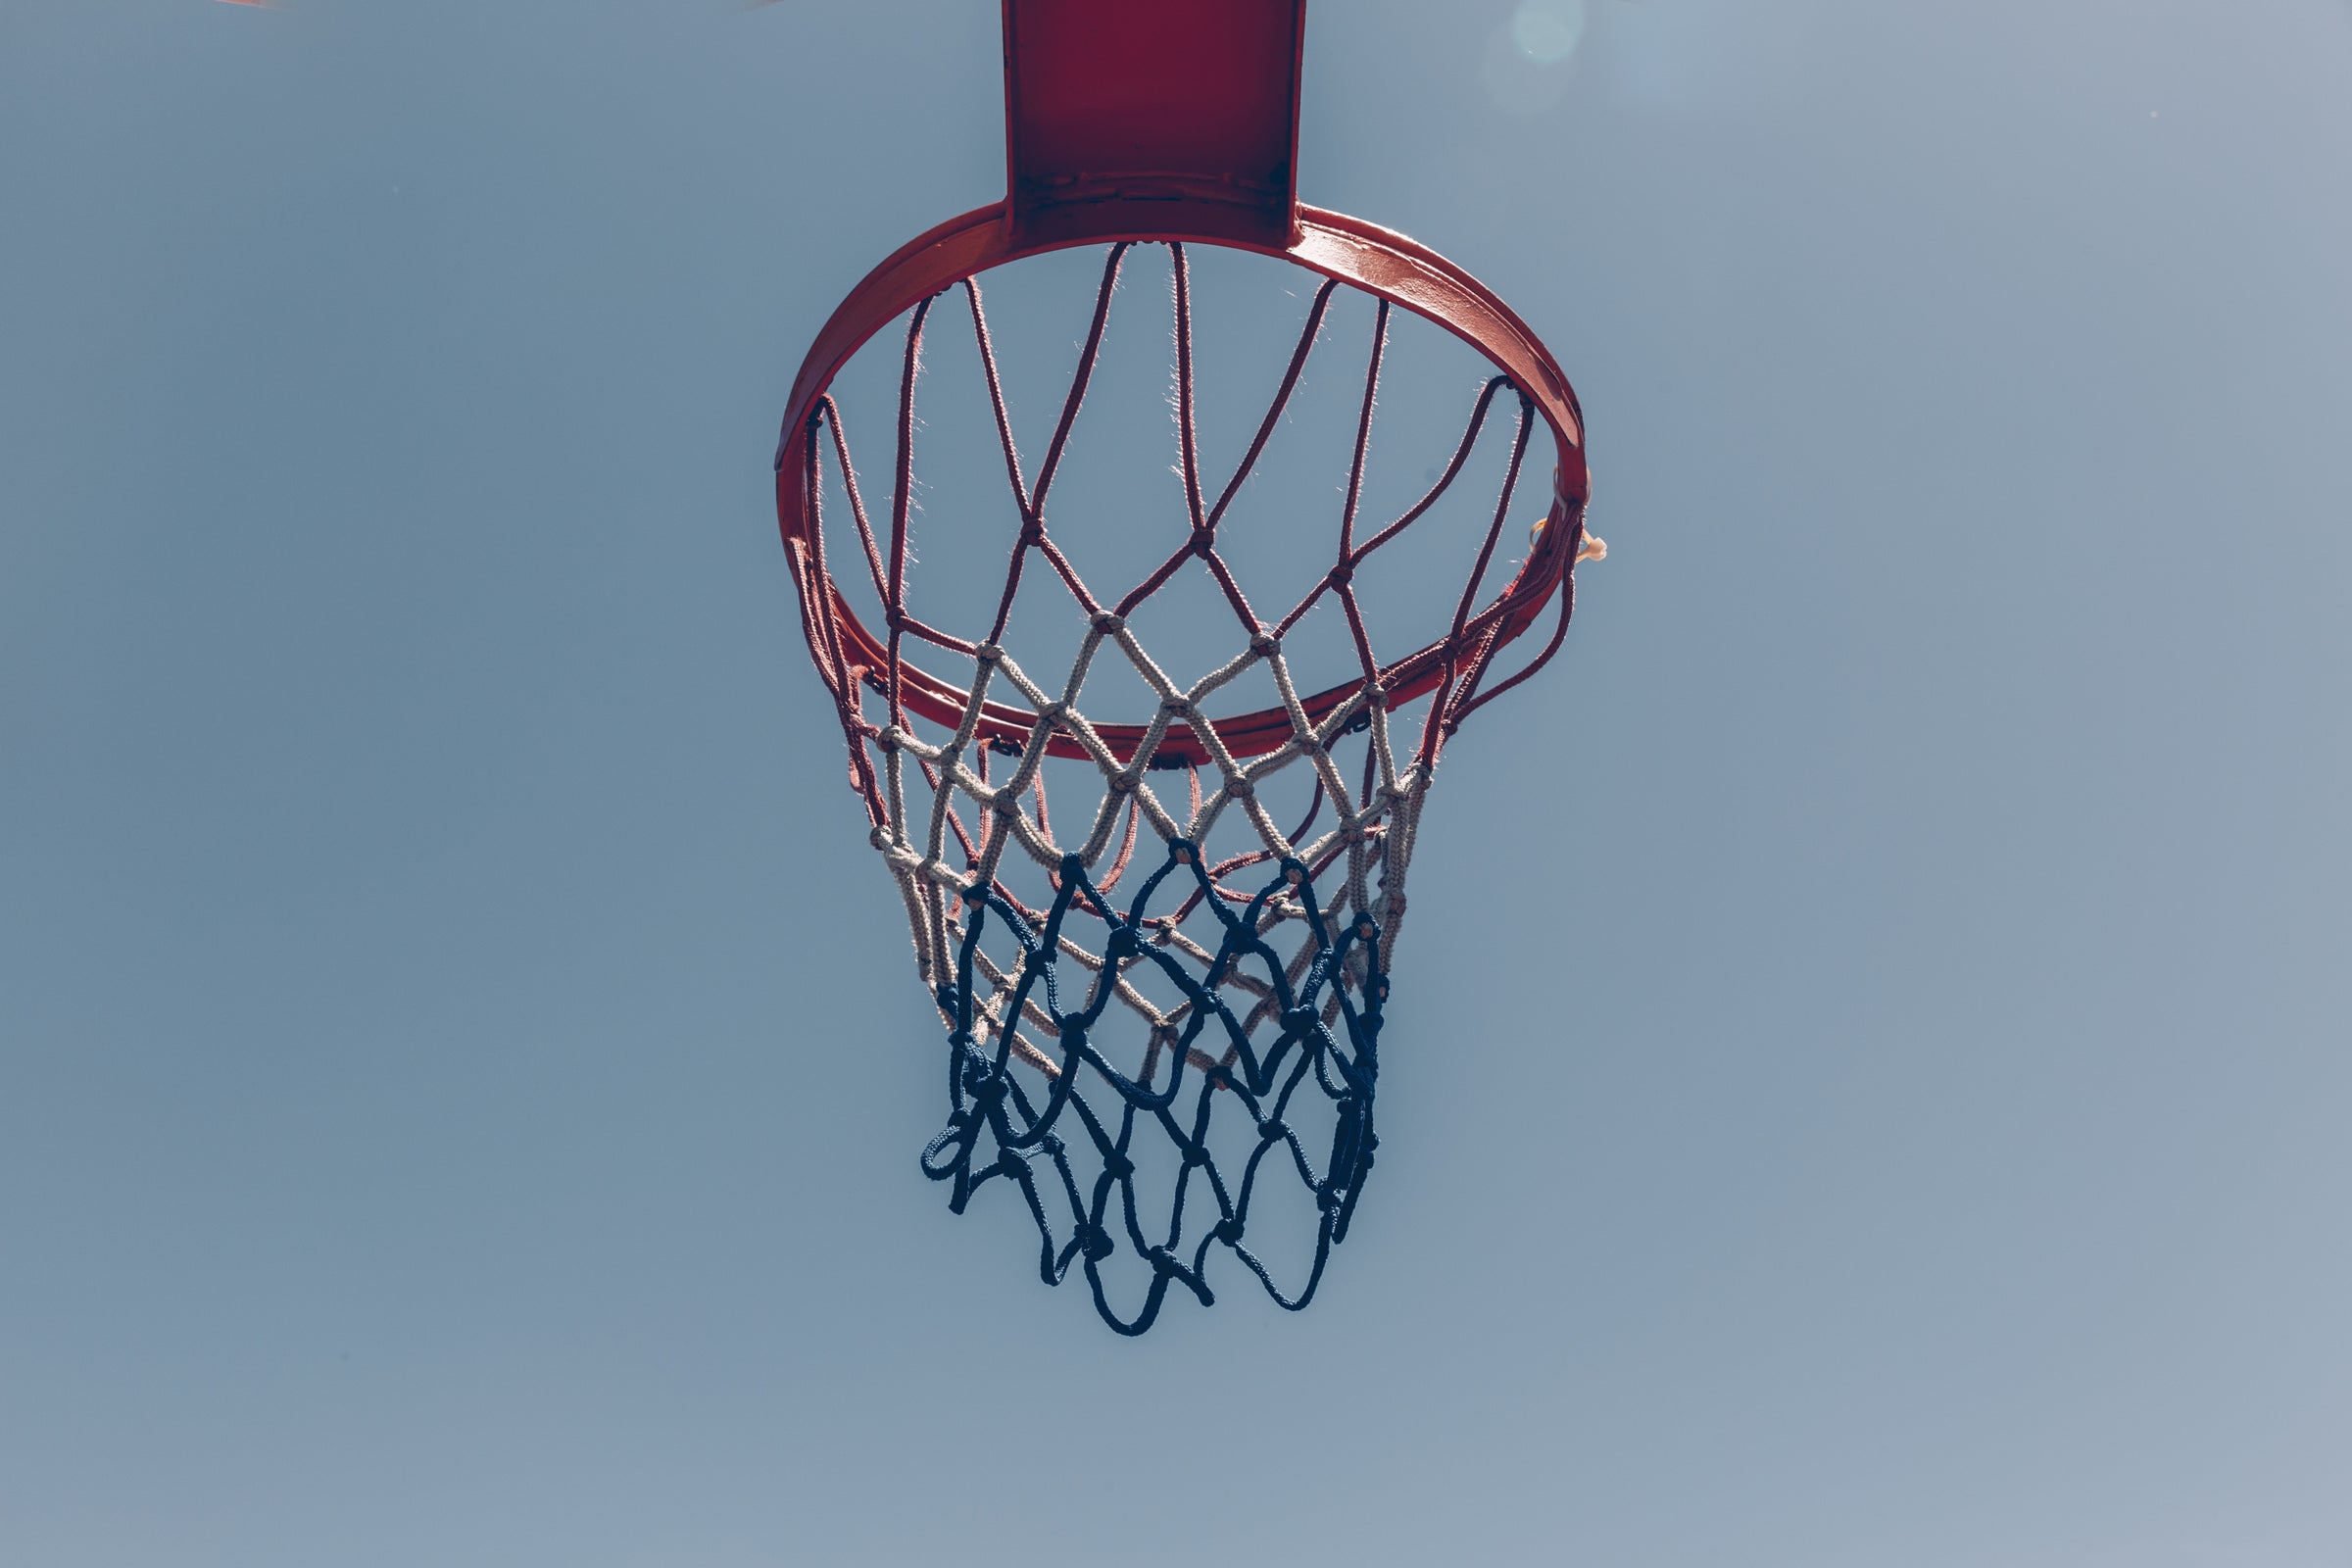 Da die beworbene 720°DGREE-Trinkflasche ideal zum Basketball-Spiele geeignet ist, zeigt das Titelblatt einen Basketballkorb vor strahlend blauem Himmel. Gutes Wetter und ein anstrengendes Spiel machen eben durstig.